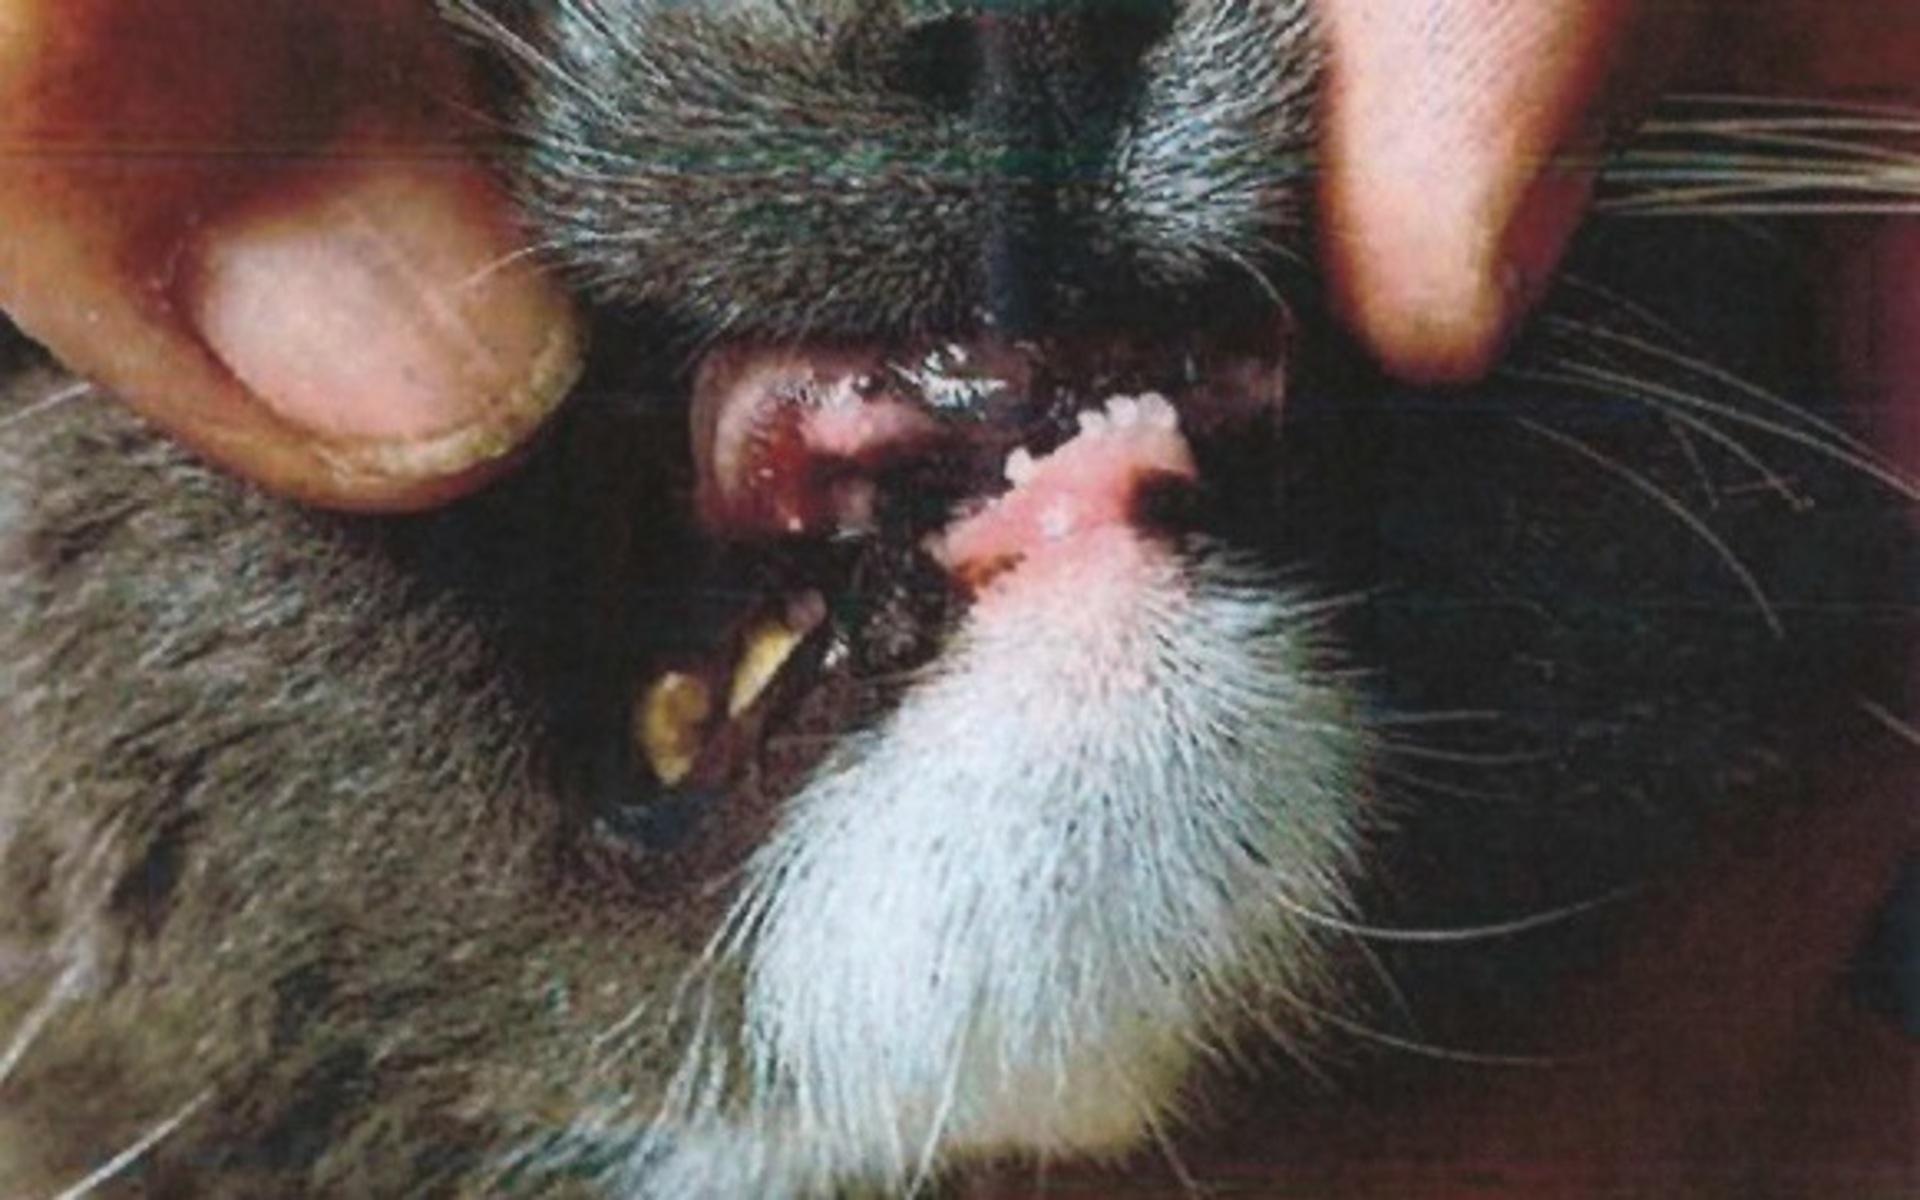 I en av katternas mun saknades flera tänder och tandköttet var irriterat.